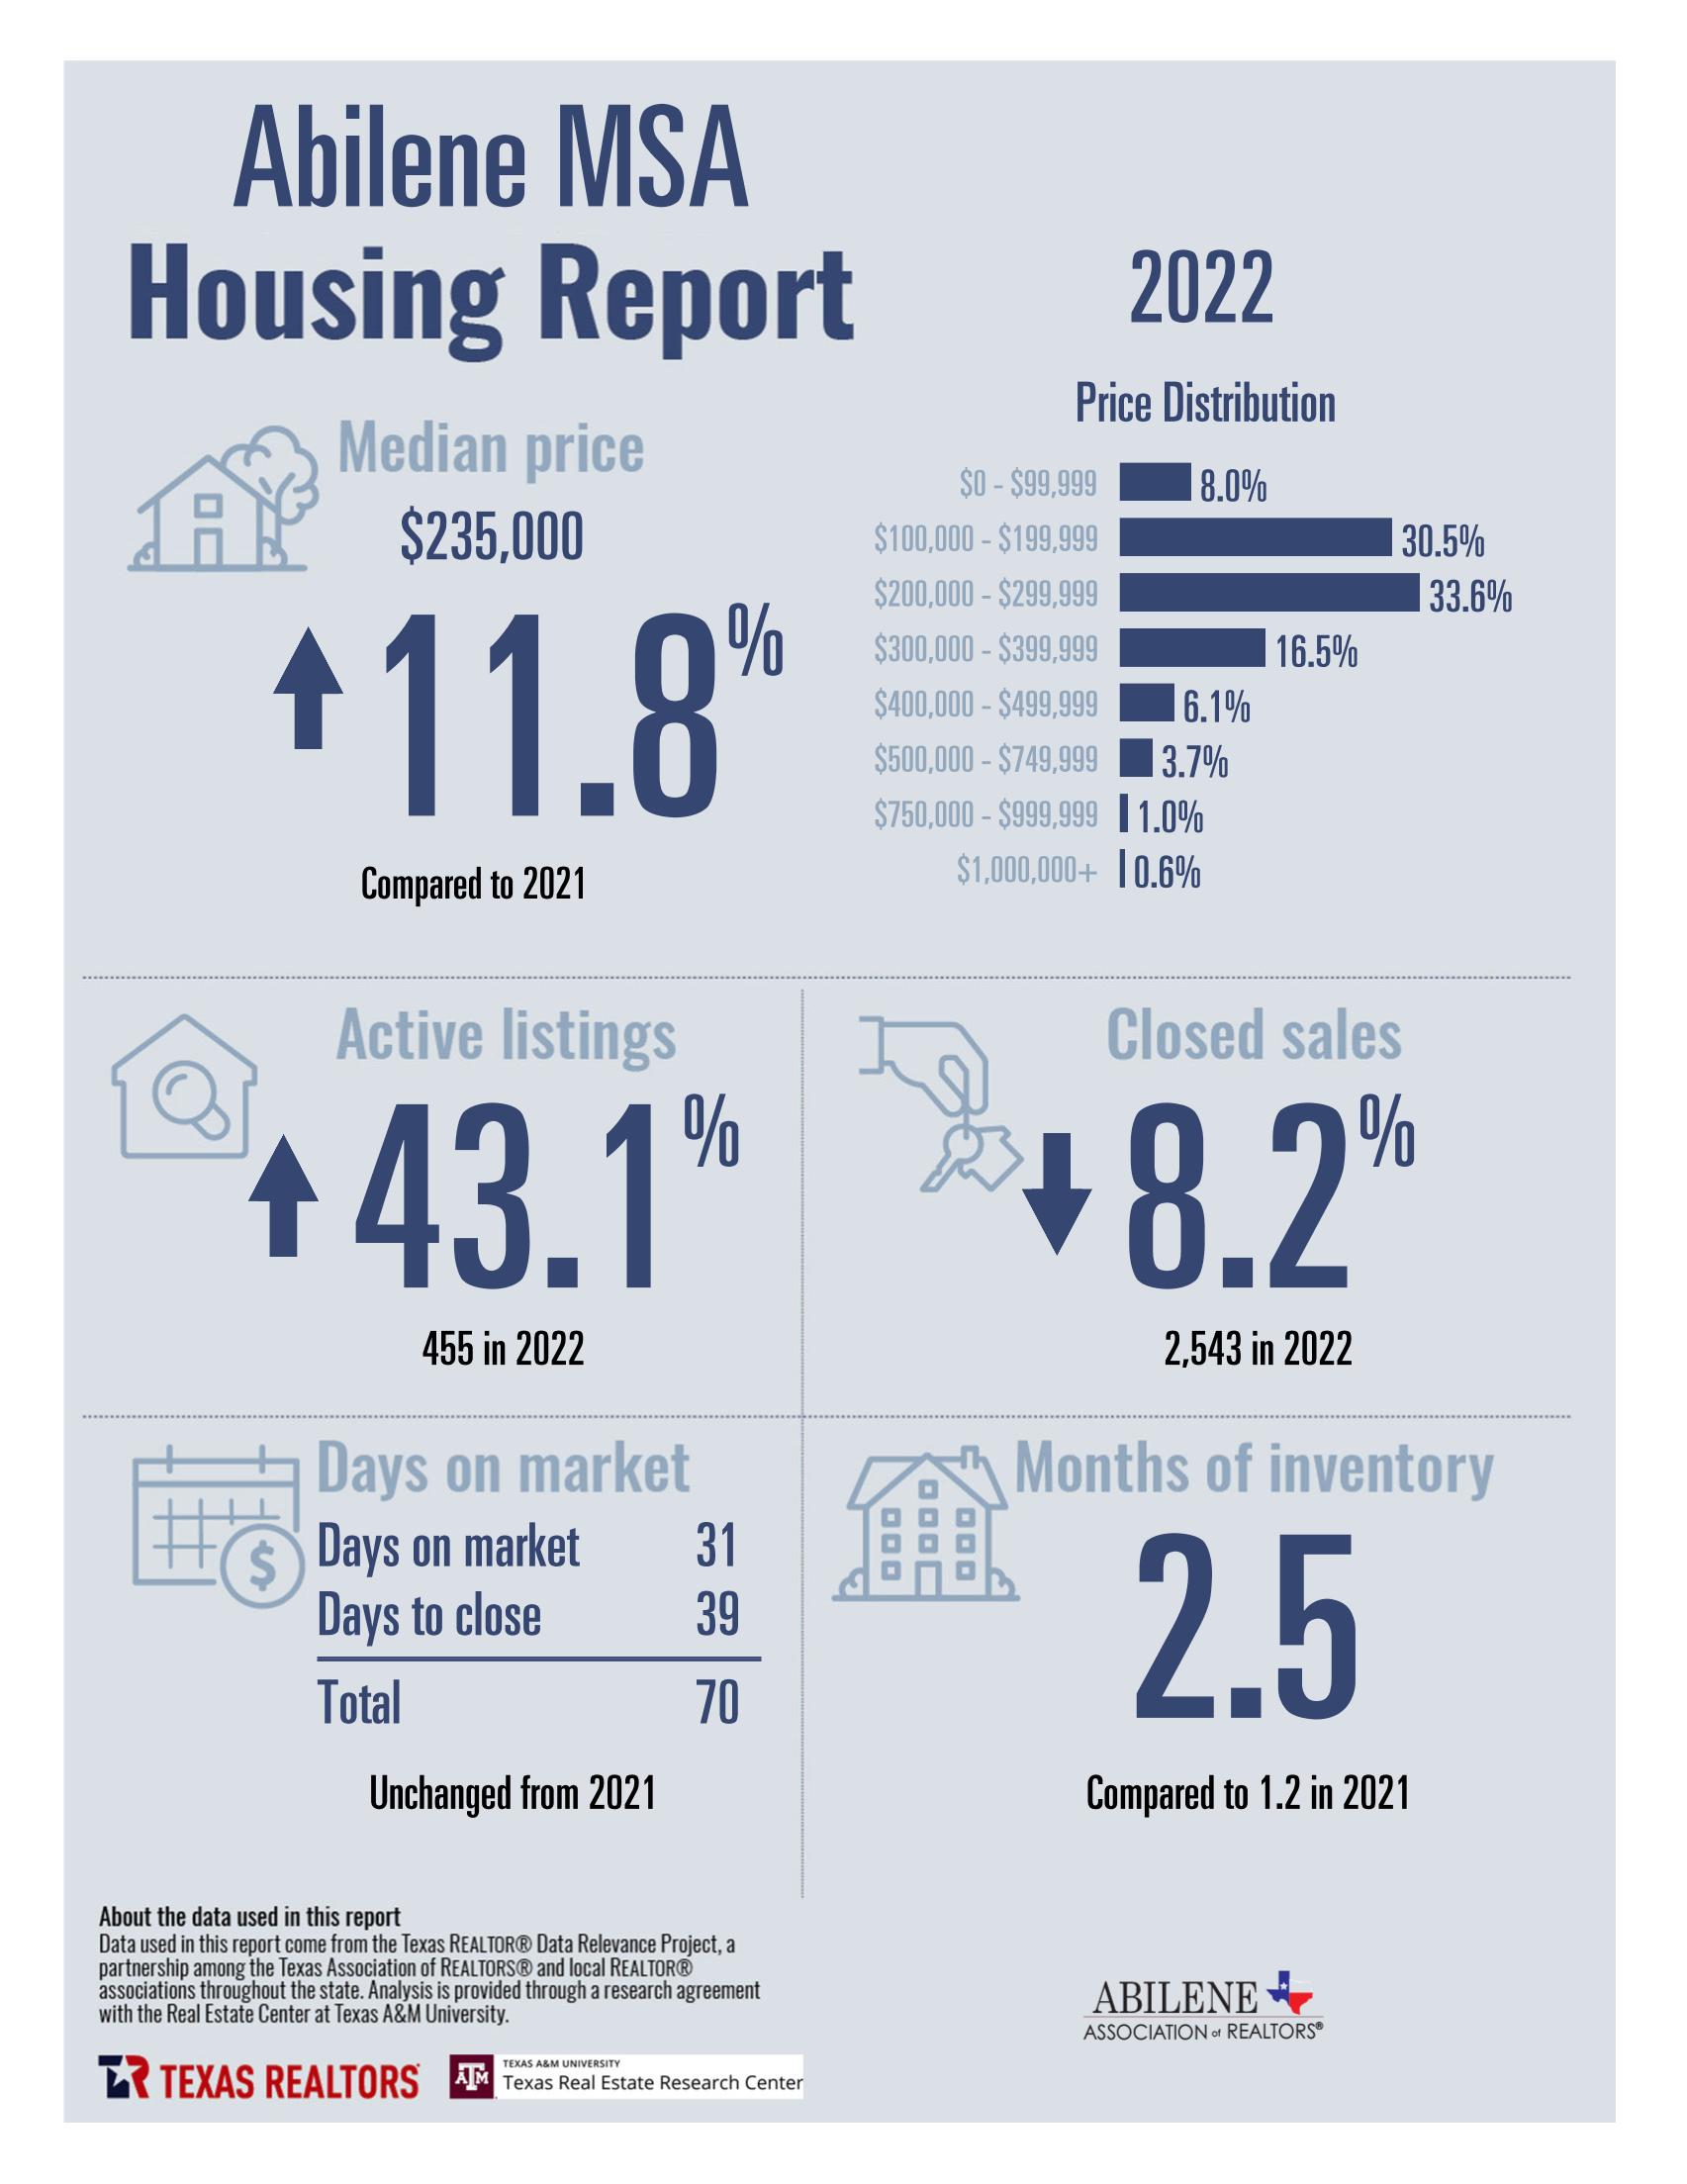 2022 Annual Housing Data for Abilene, TX